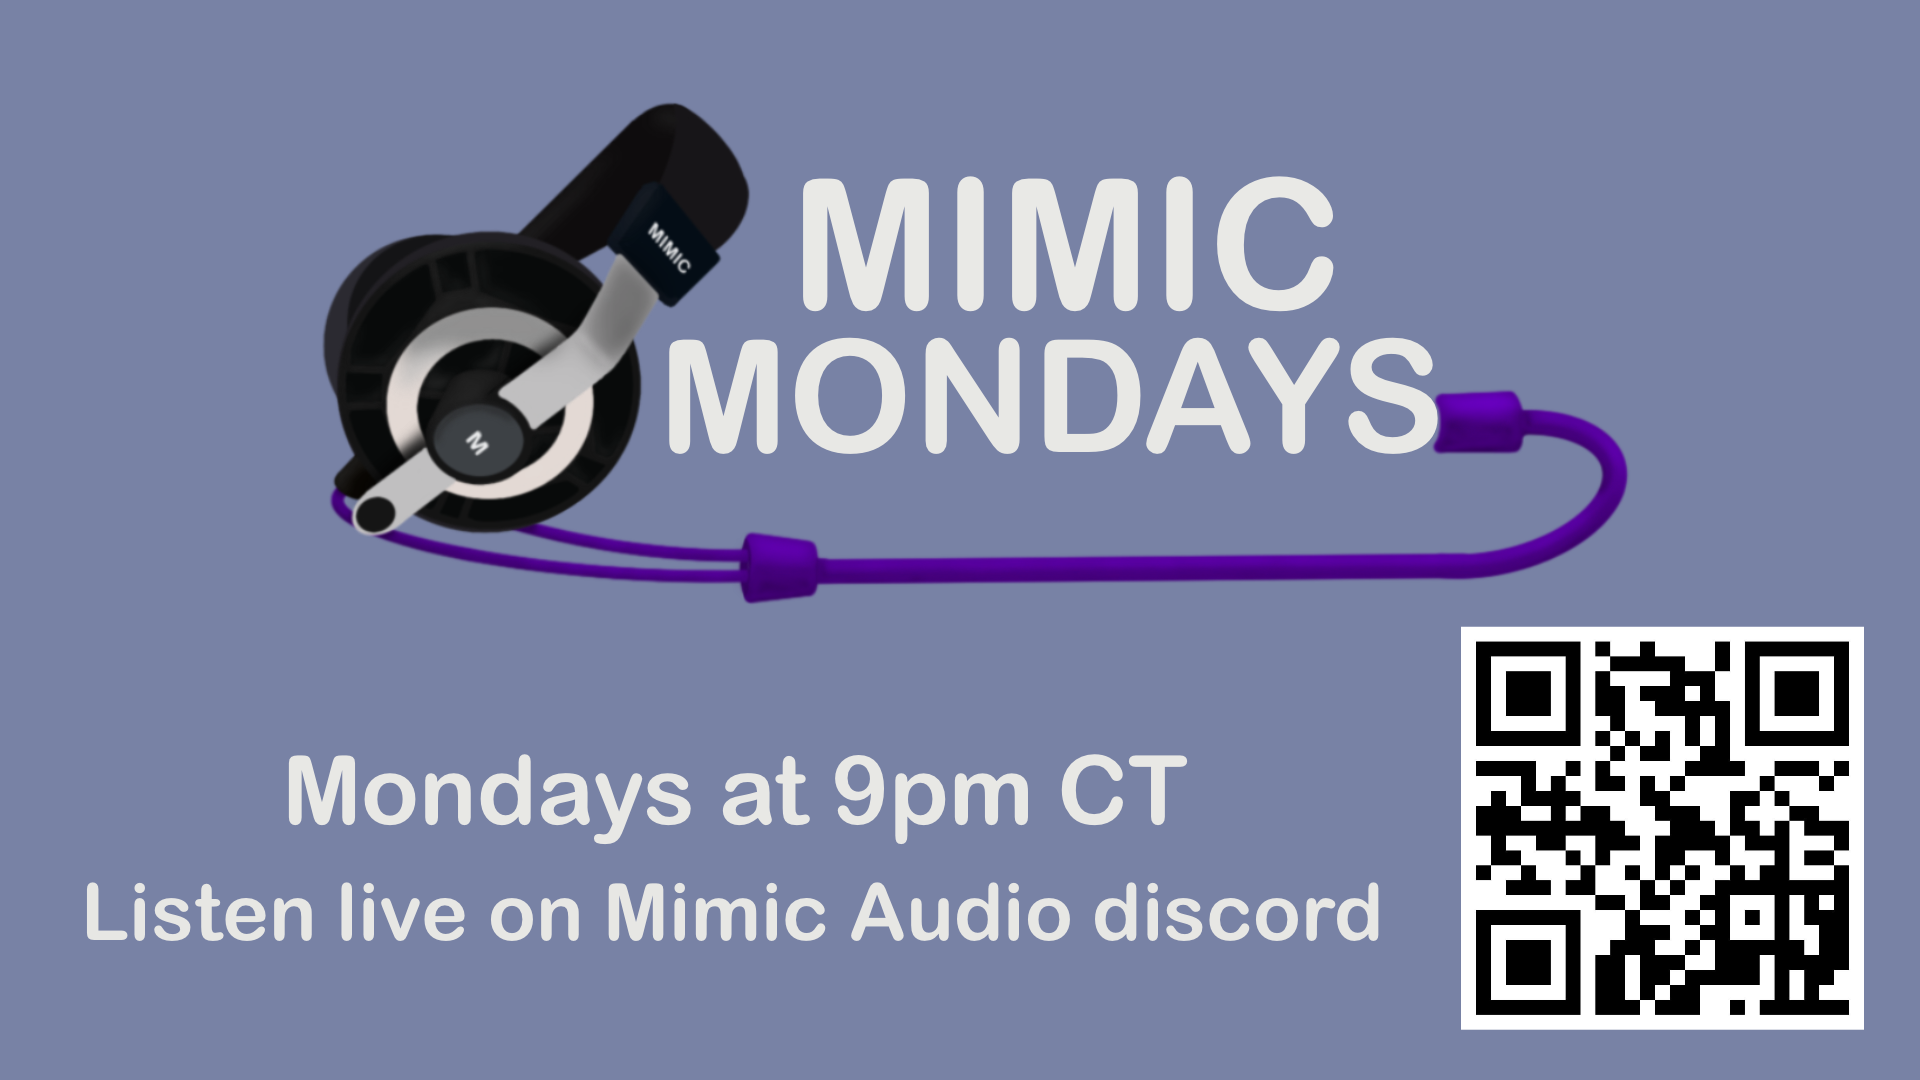 Mimic Mondays Ep. 2 is now live!